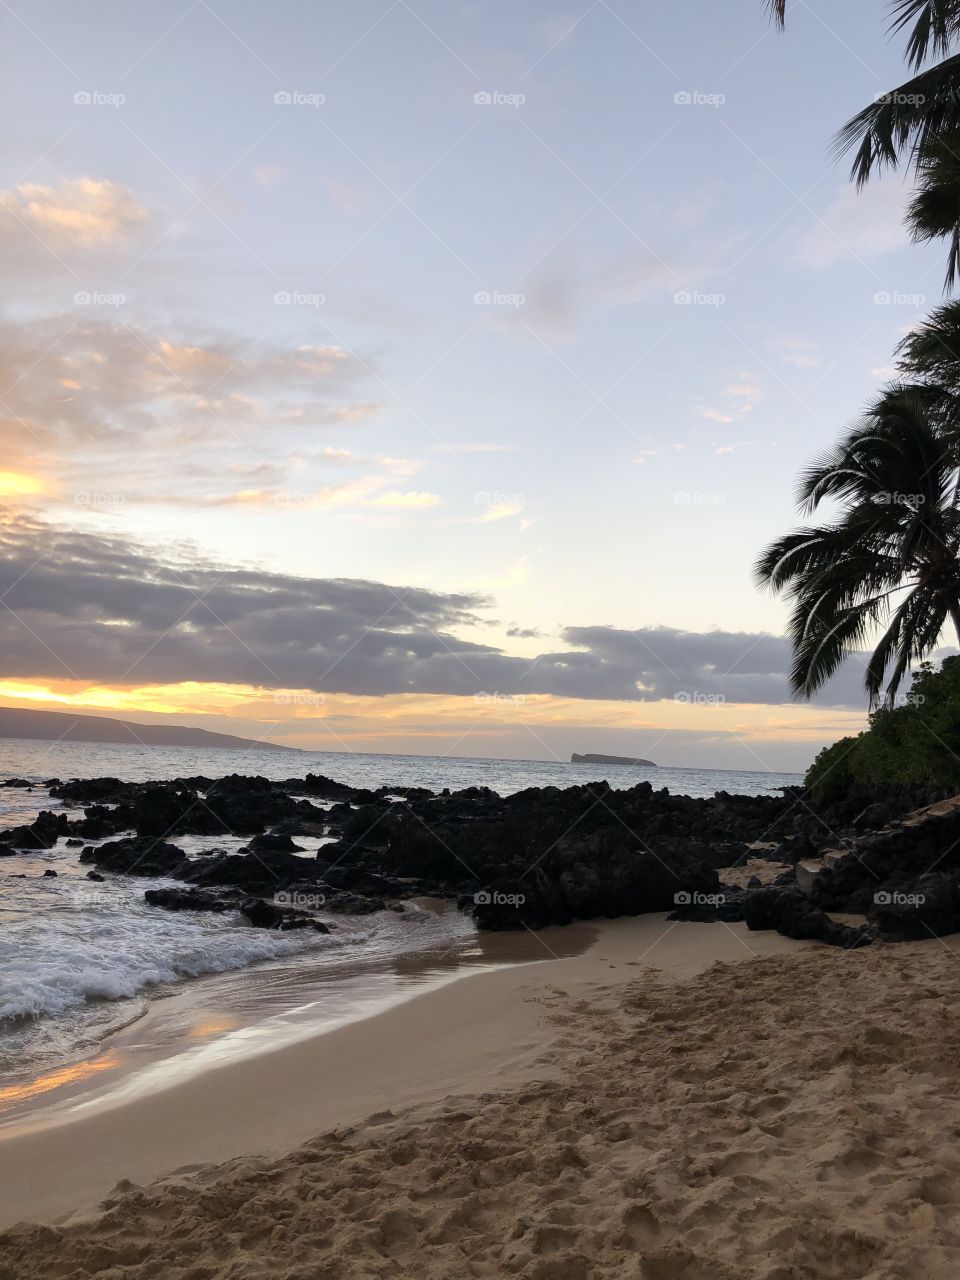 Maui, Hawaii beach sunset